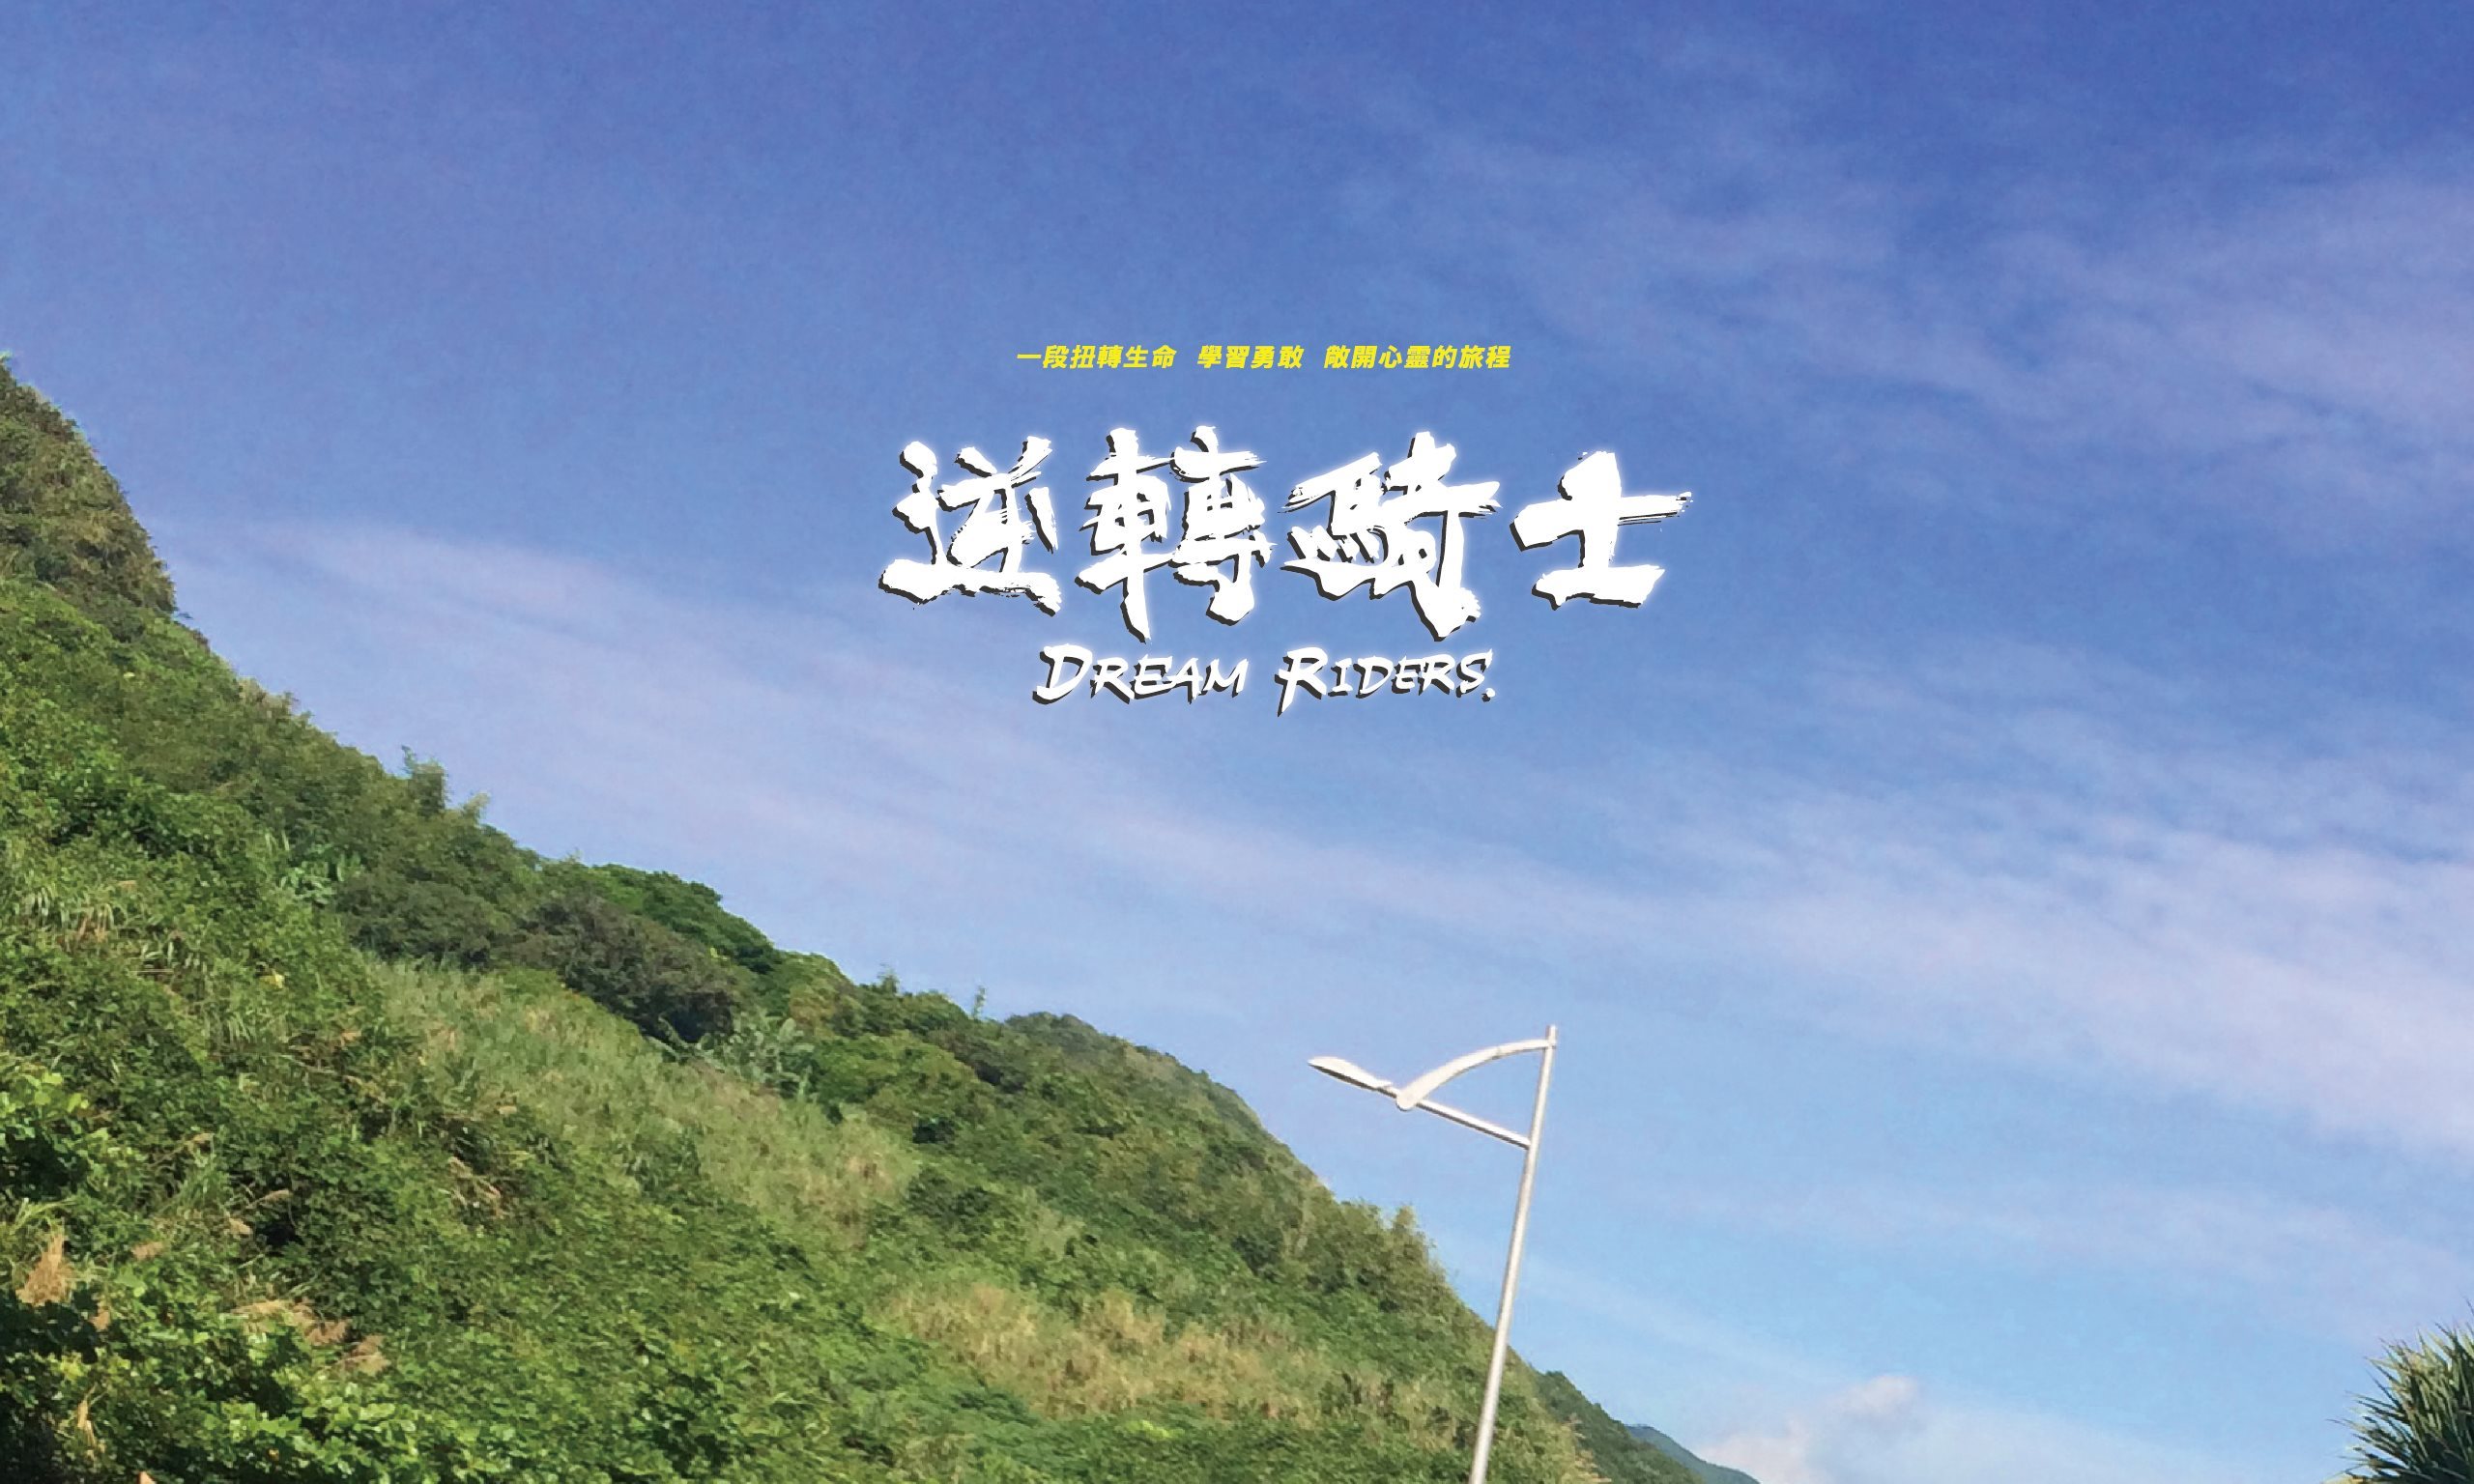 Dream Riders - Taiwan graphic design